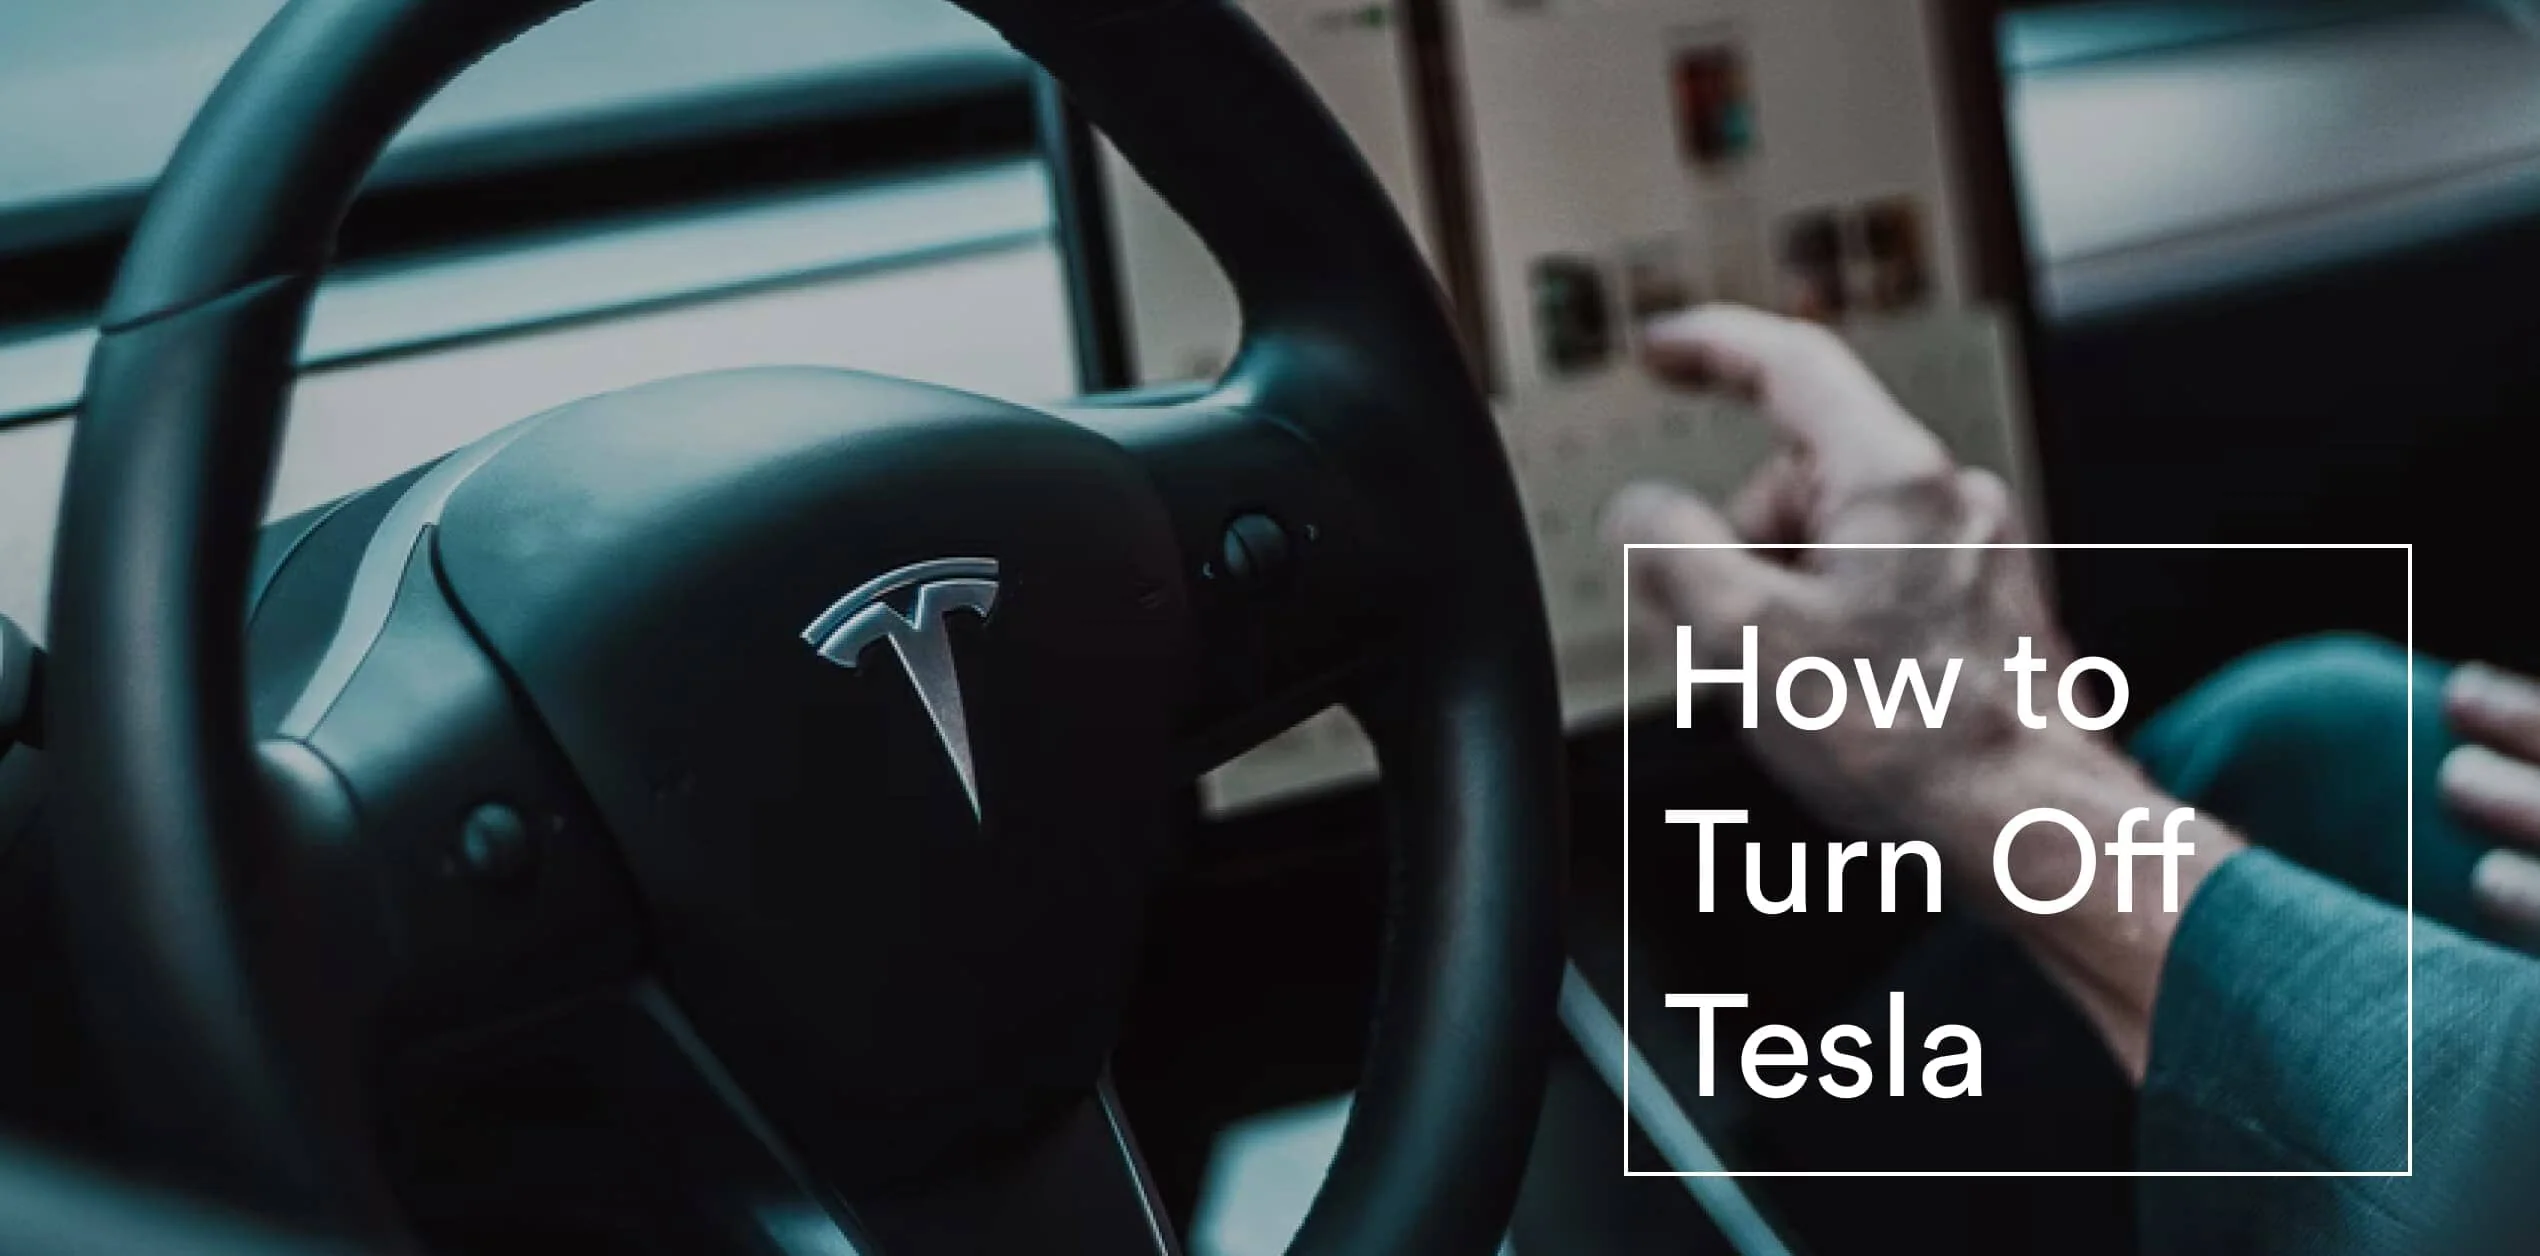 How Do You Turn Off a Tesla